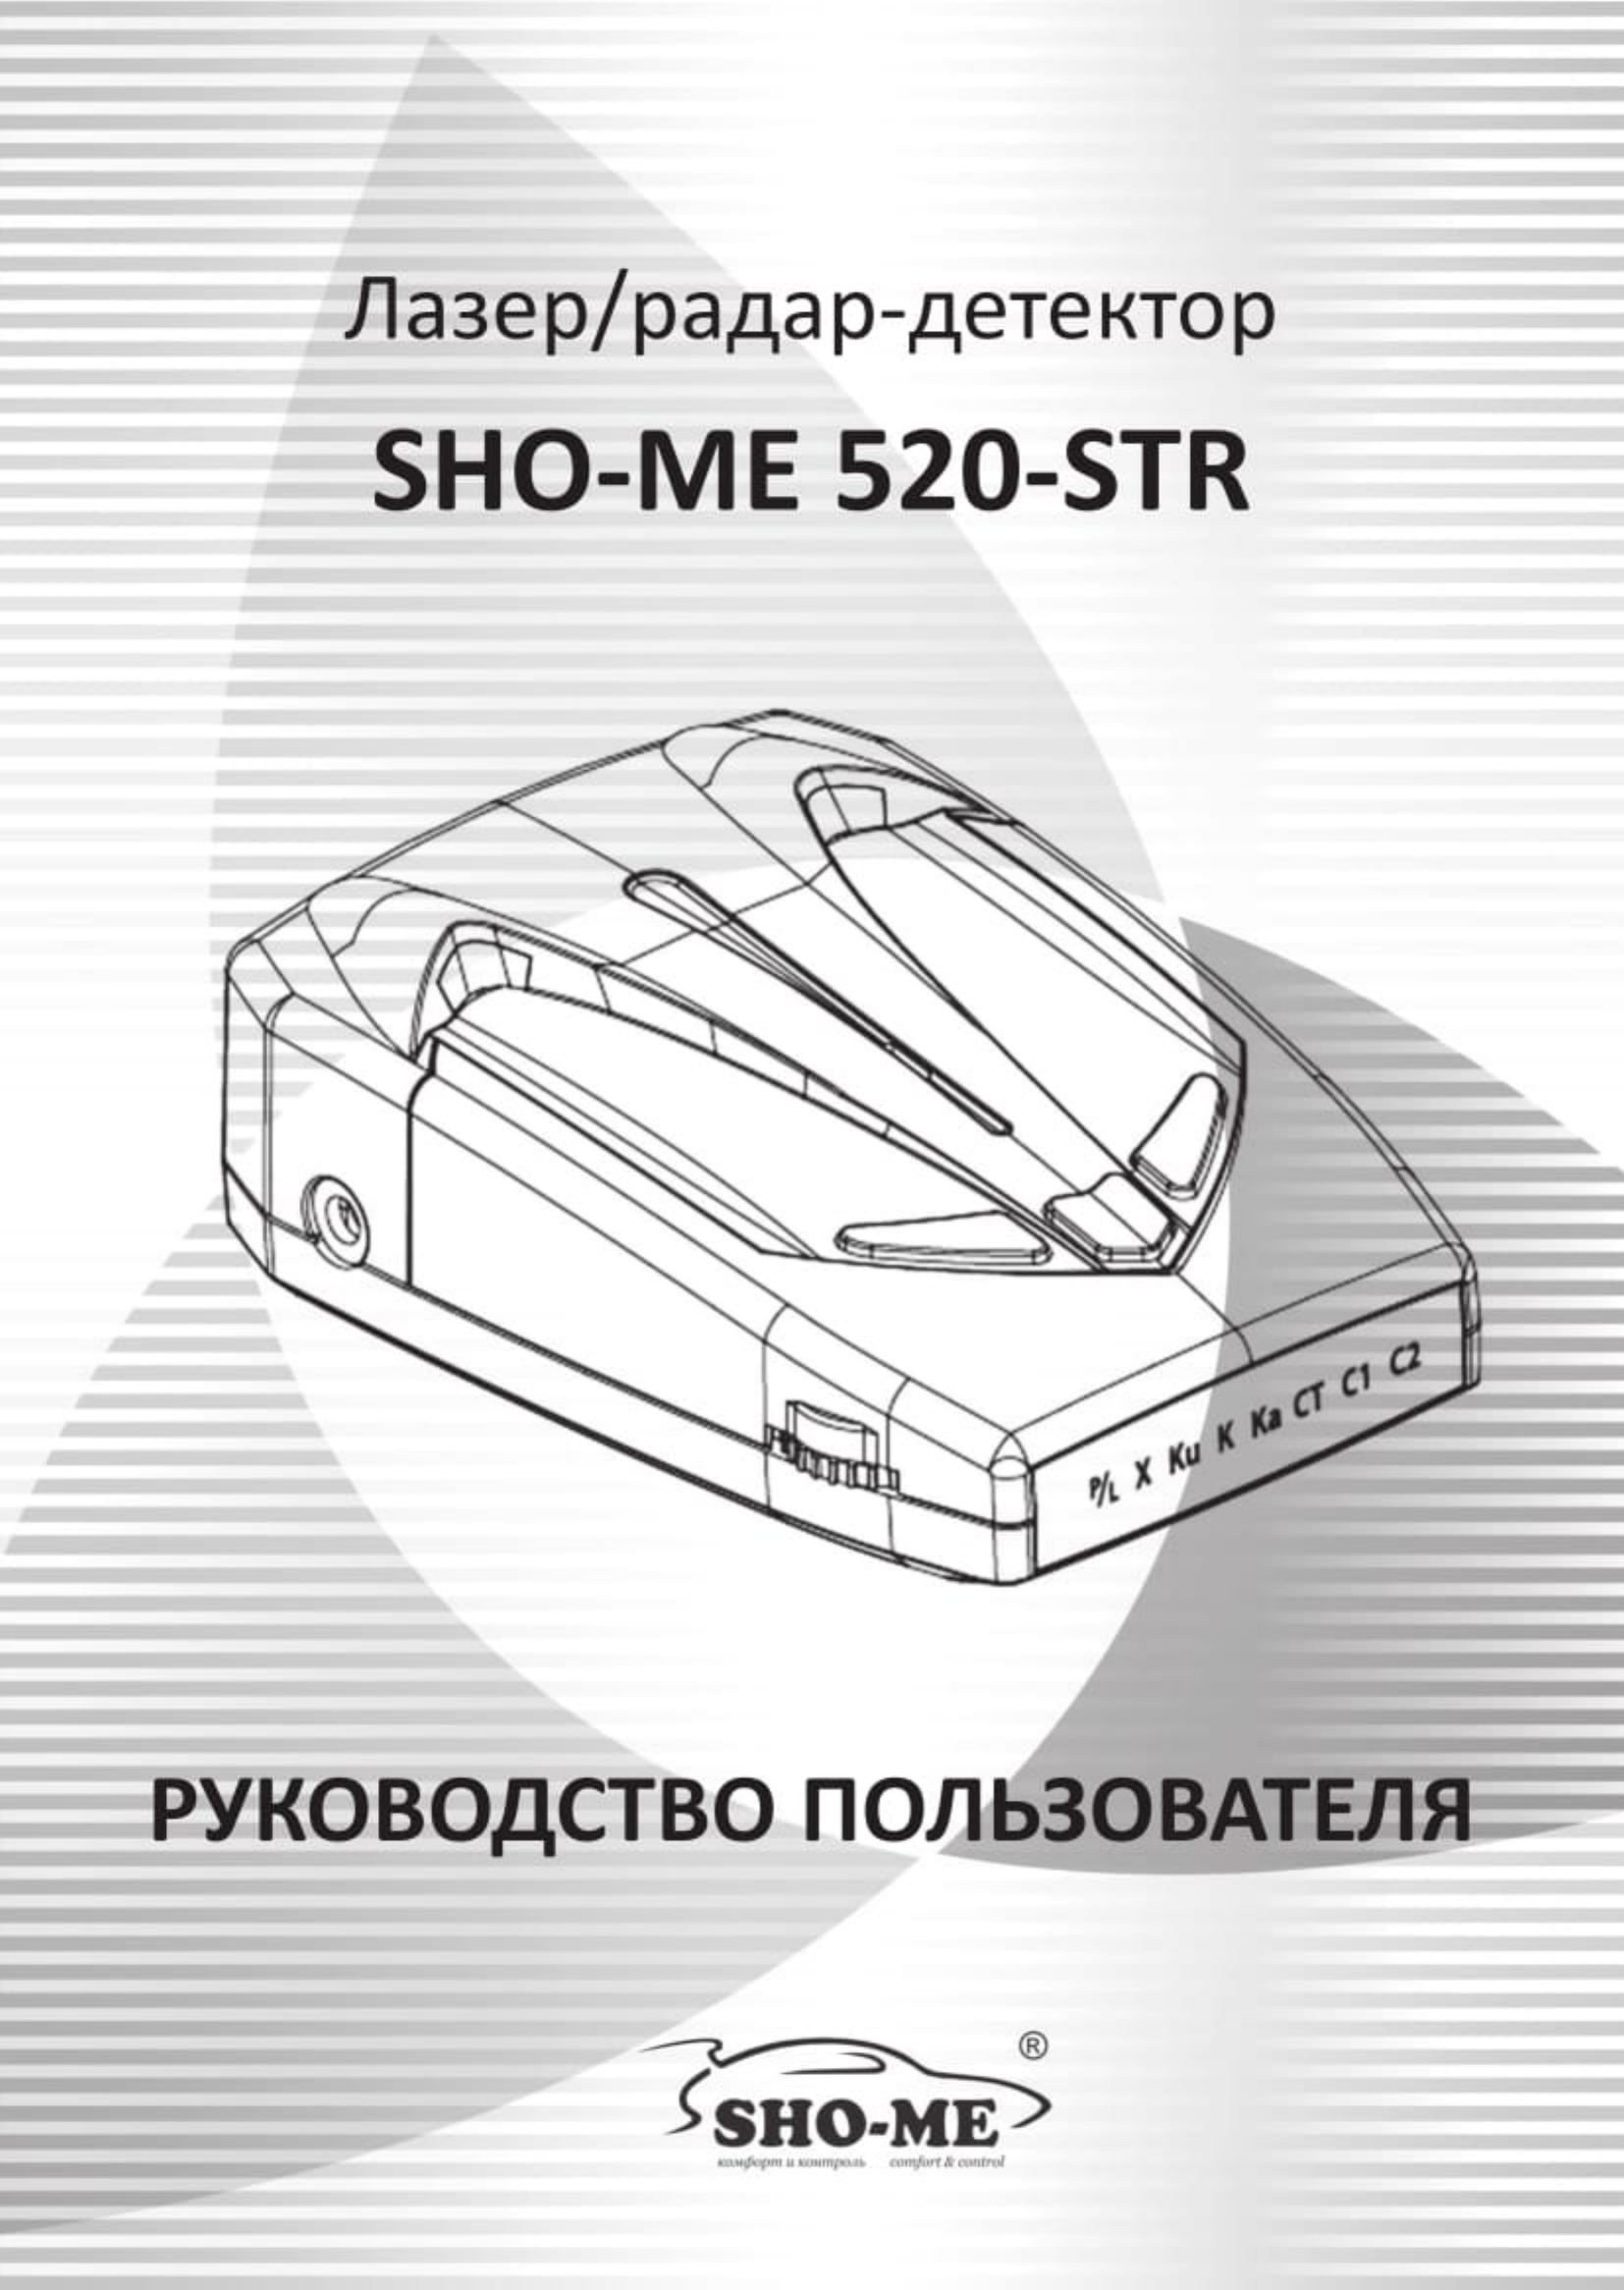 Обзор радар-детектора sho-me 520-str: плюсы и минусы, отзывы и характеристики - обзоры от test